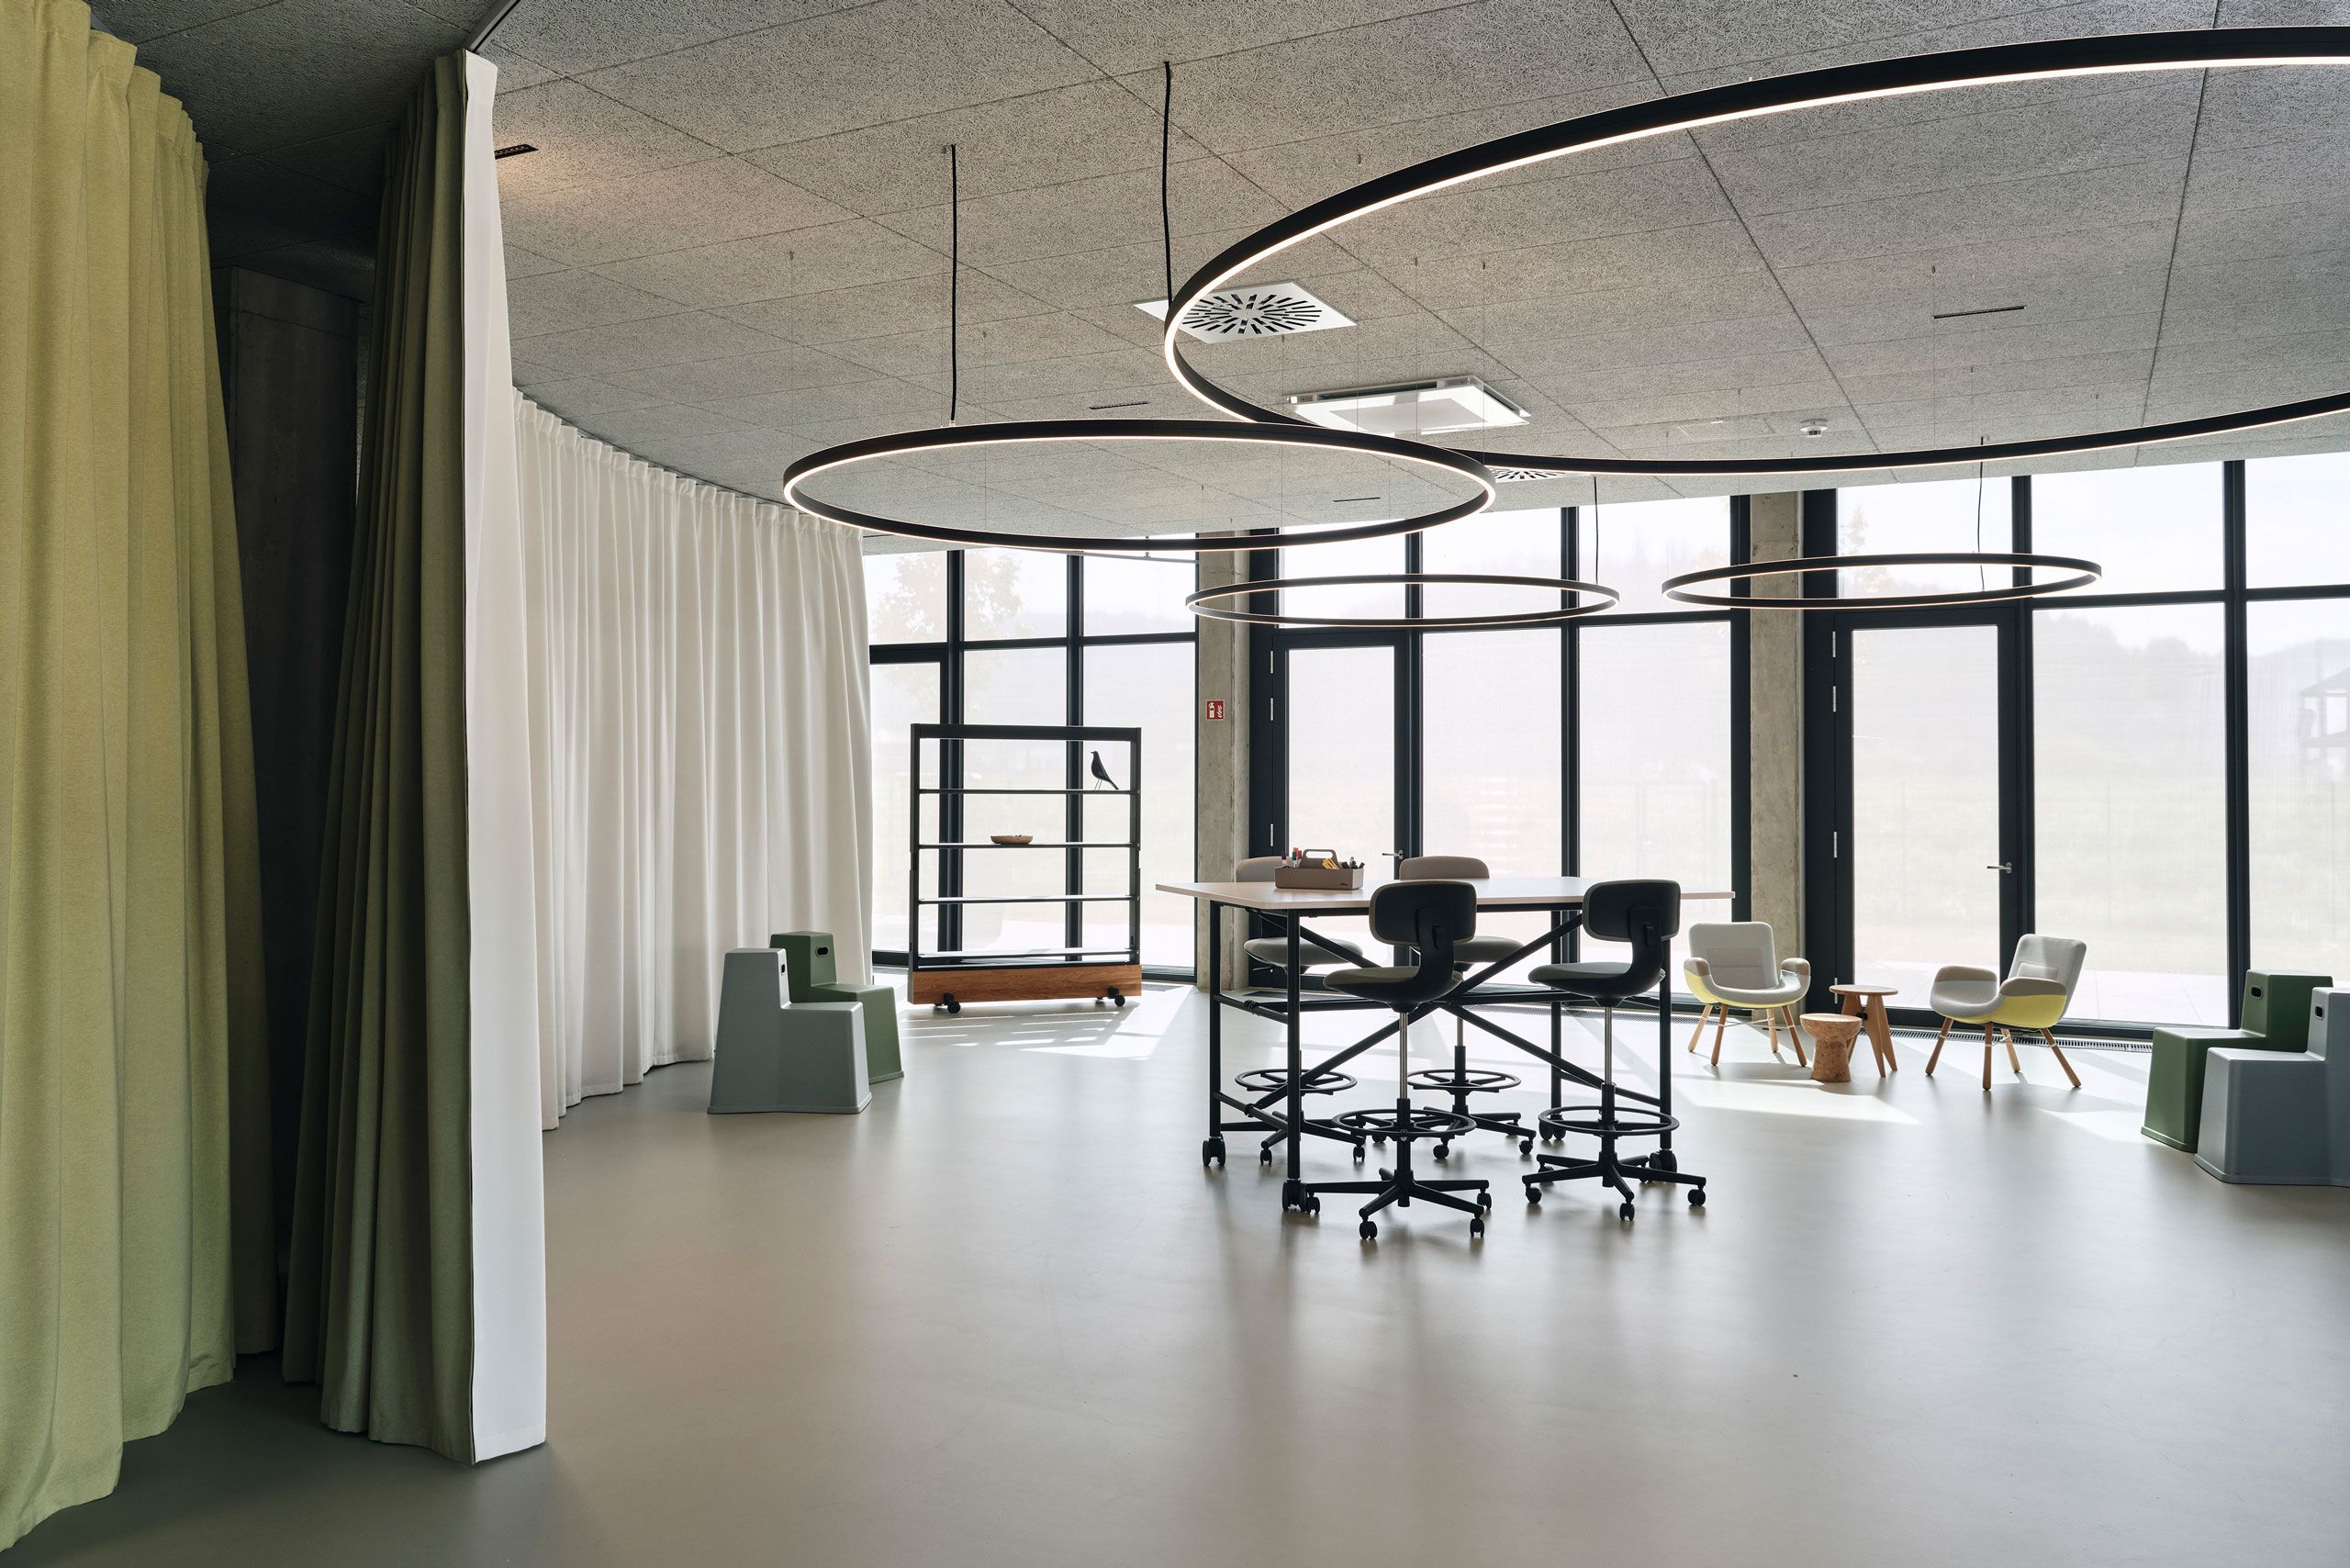 Grosszügige Bürosituation welche mit einem akustisch wirksamen Vorhang räumlich getrennt werden kann, zum Beispiel für Sitzungen.